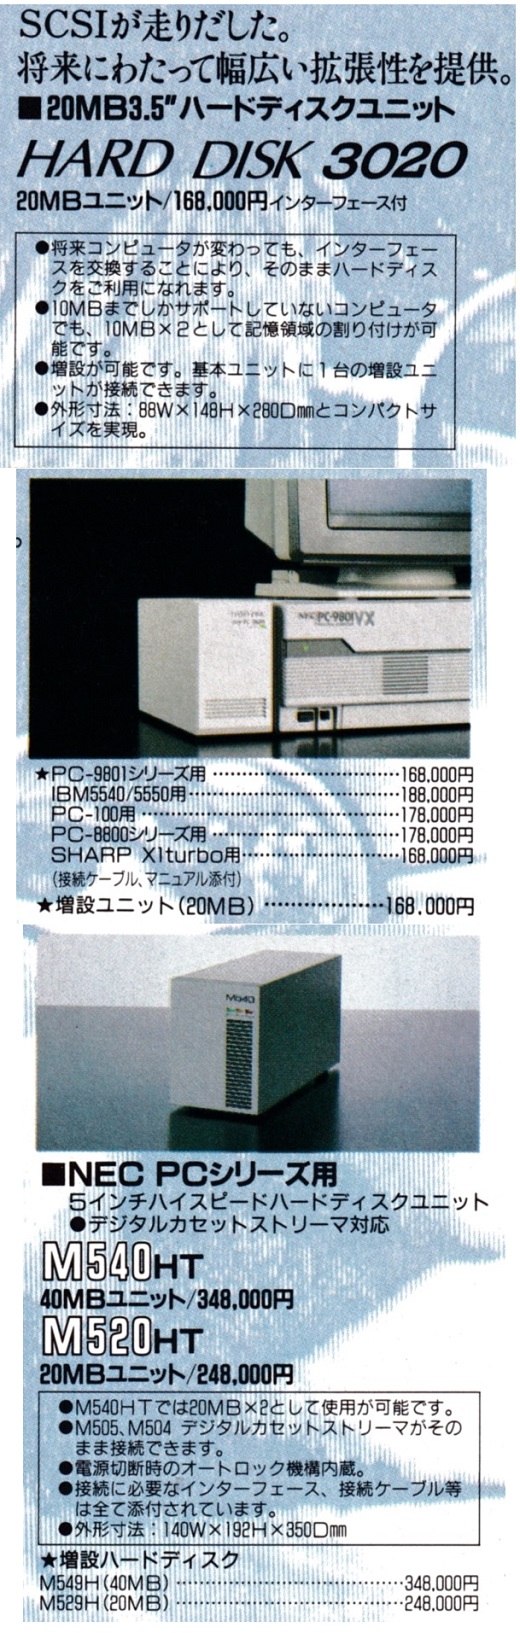 ASCII1987(03)a13アイテムHDD_W520.jpg